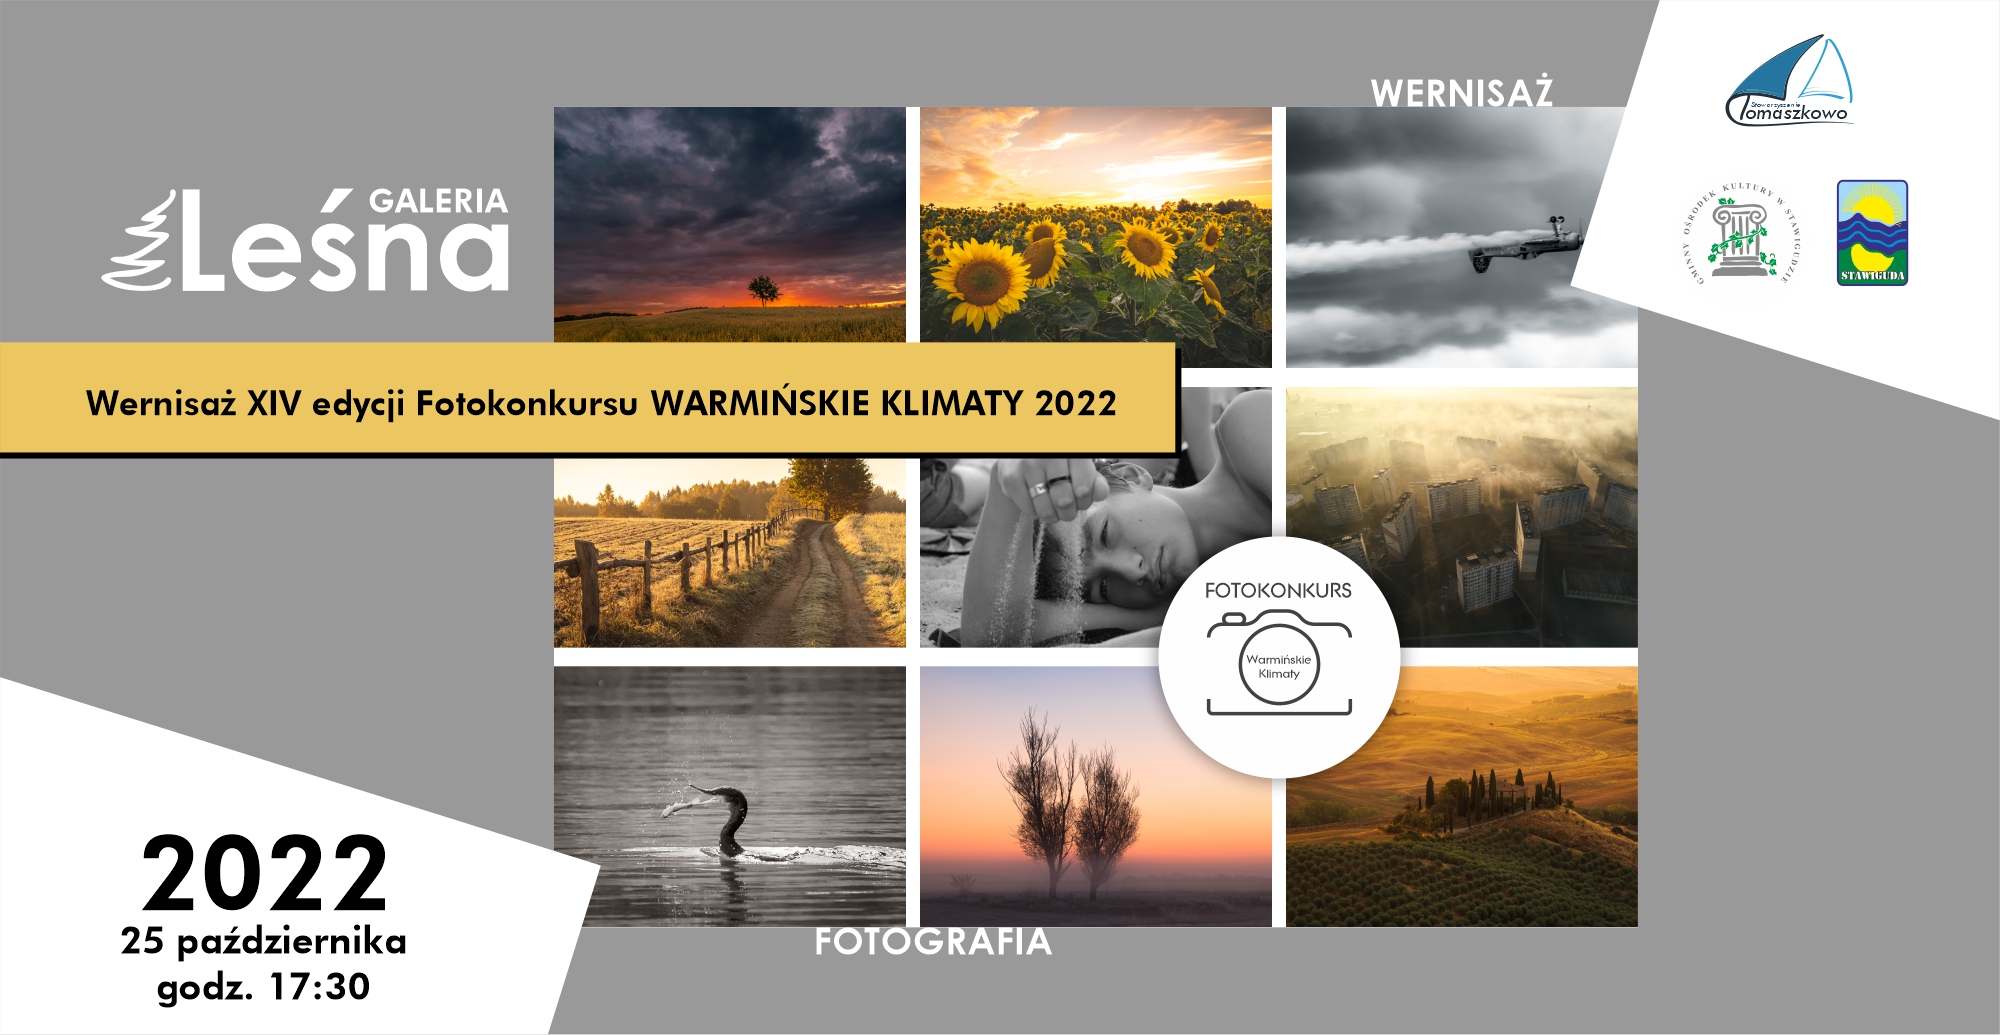 BANER_maly_Wernisaz_Fotokonkurs_Warminskie_Klimaty_2022.jpg